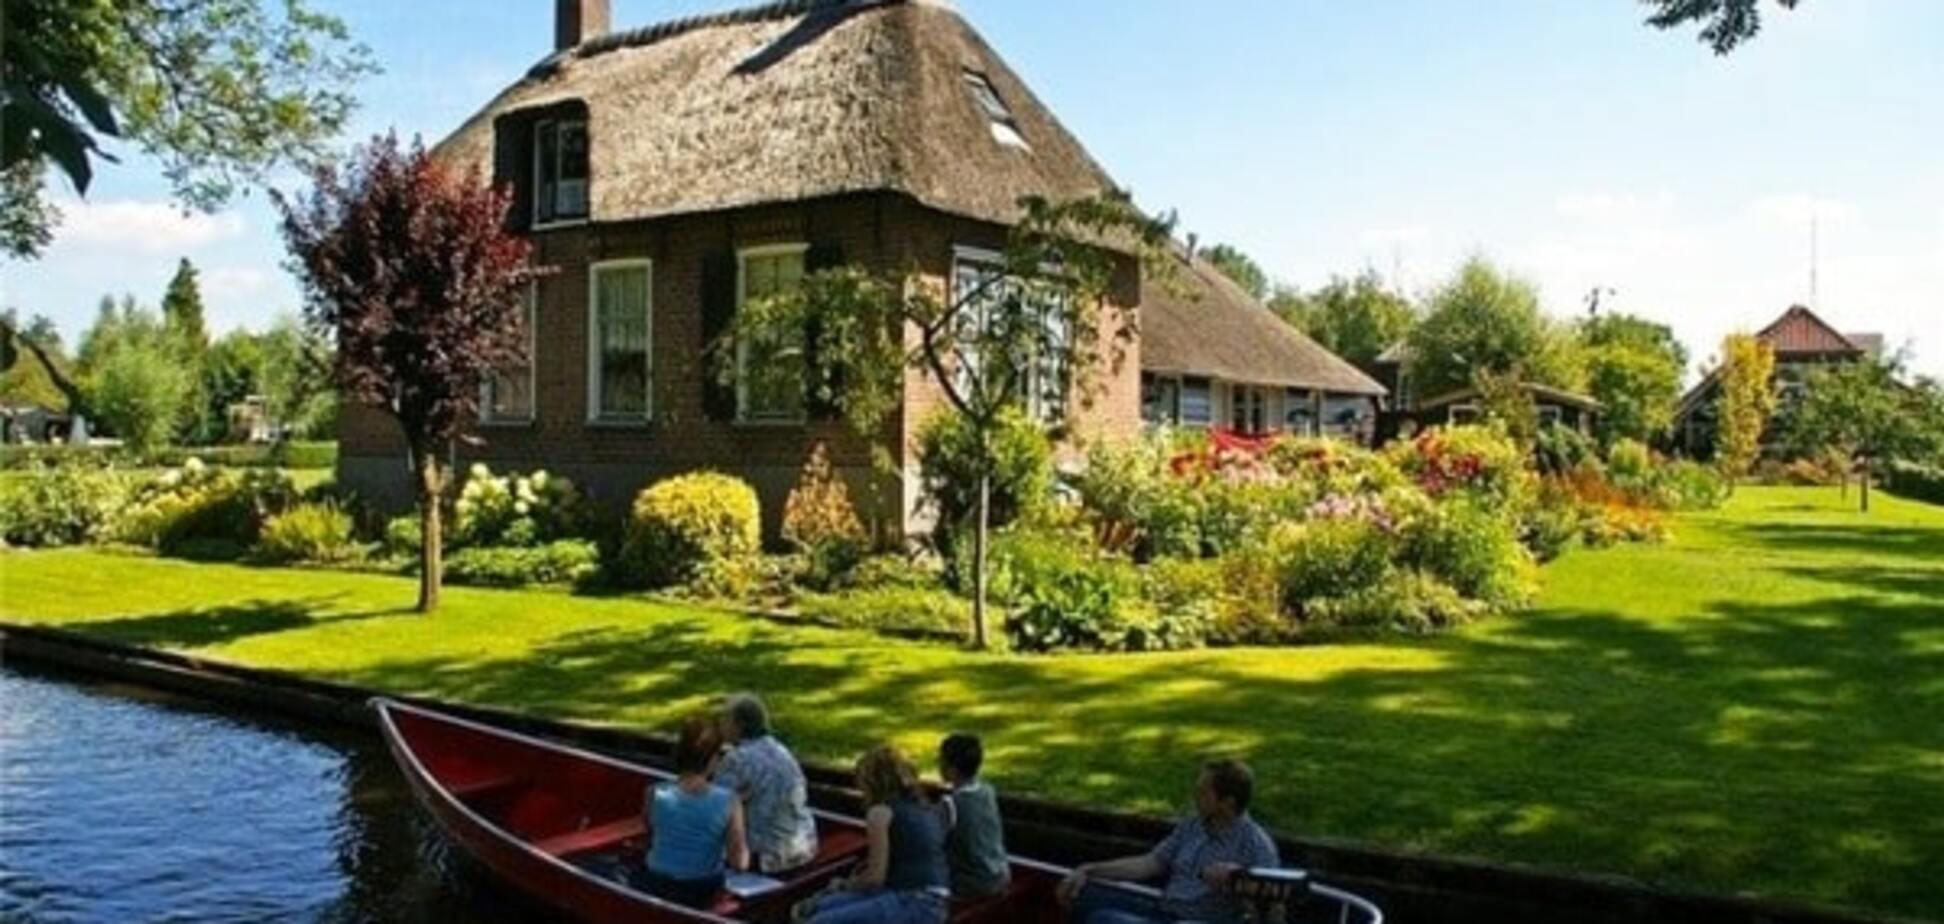 Рай на Земле: фото сказочной деревни Гитхорн в Нидерландах